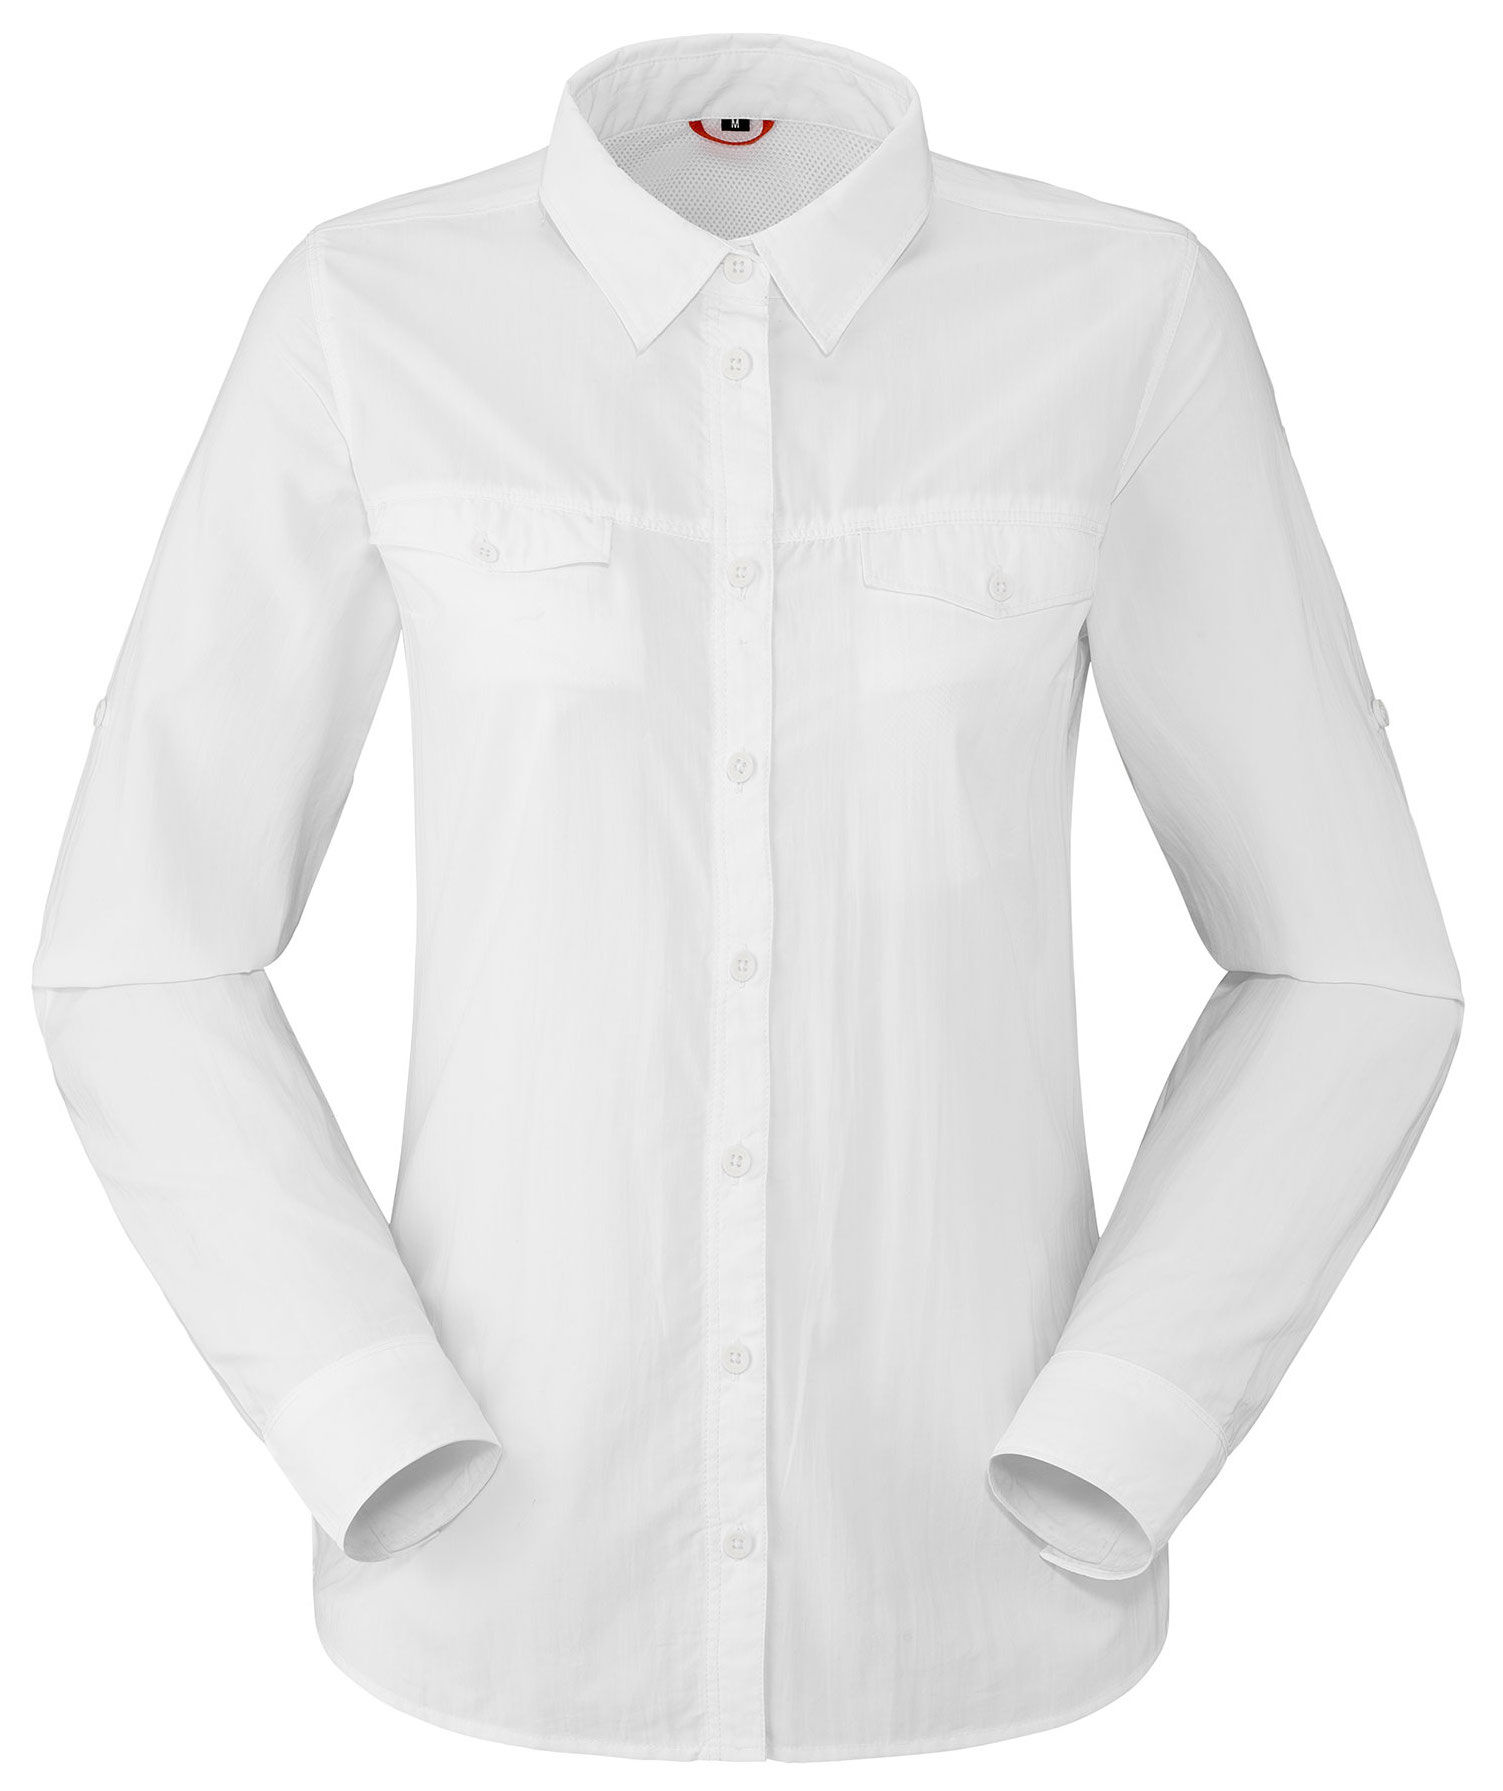 Lafuma - LD Shield Shirt - Shirt - Women's